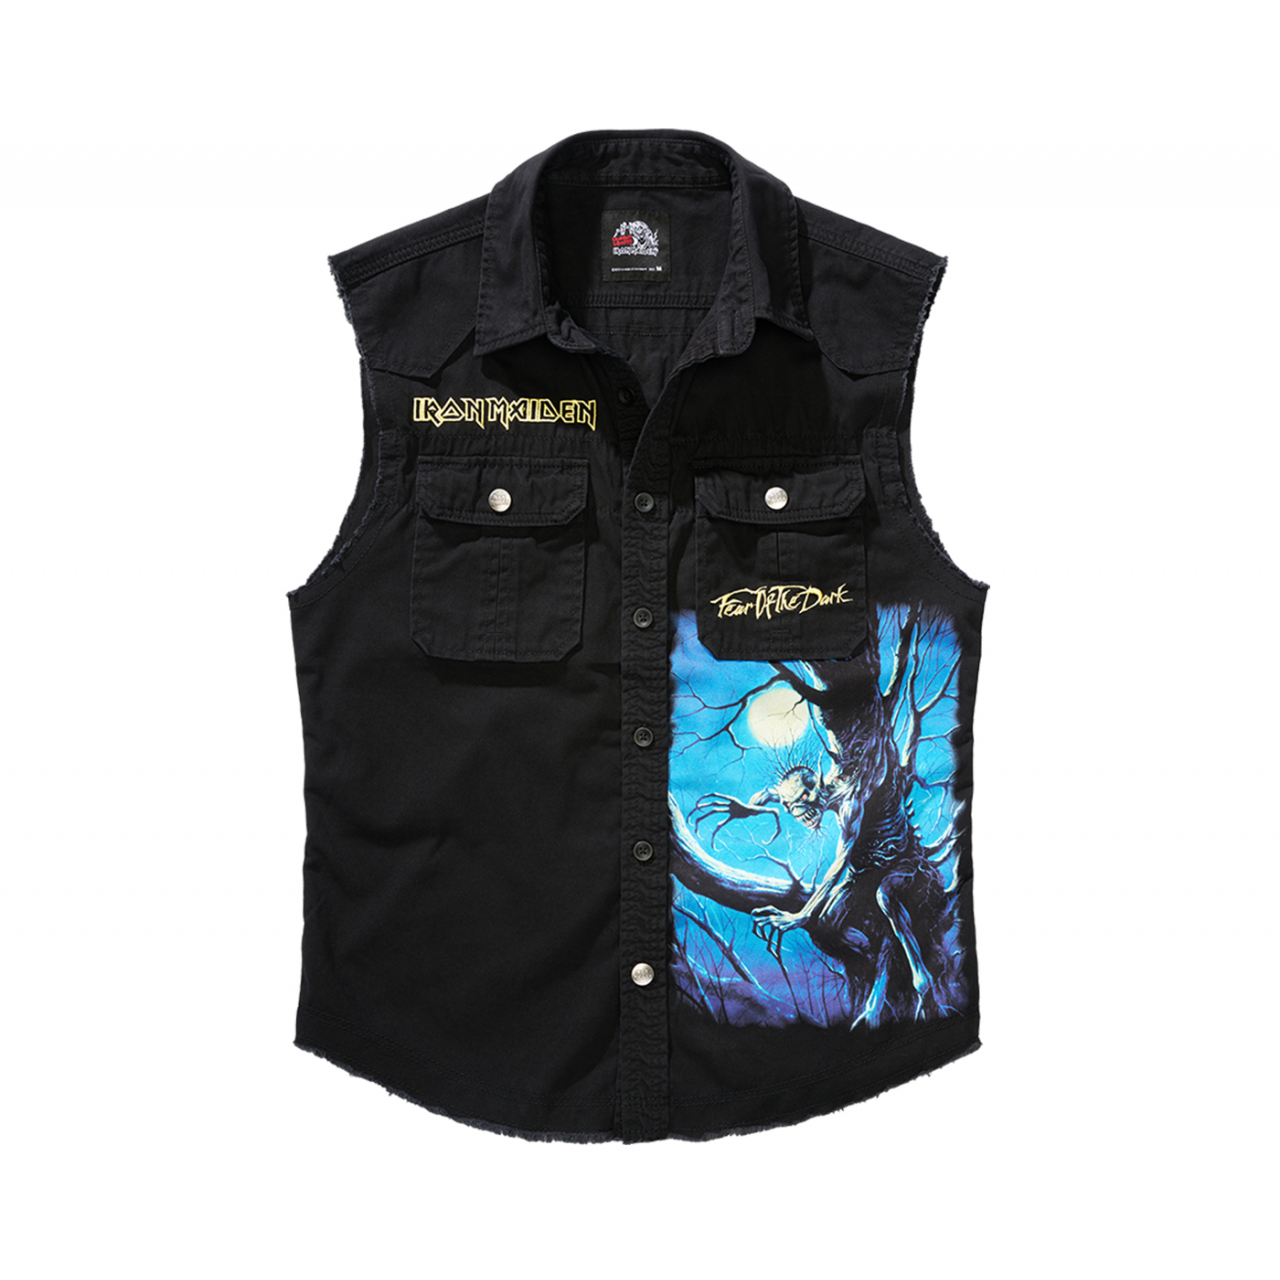 Košile Brandit Iron Maiden Vintage Shirt Sleeveless FOTD - černá, 7XL